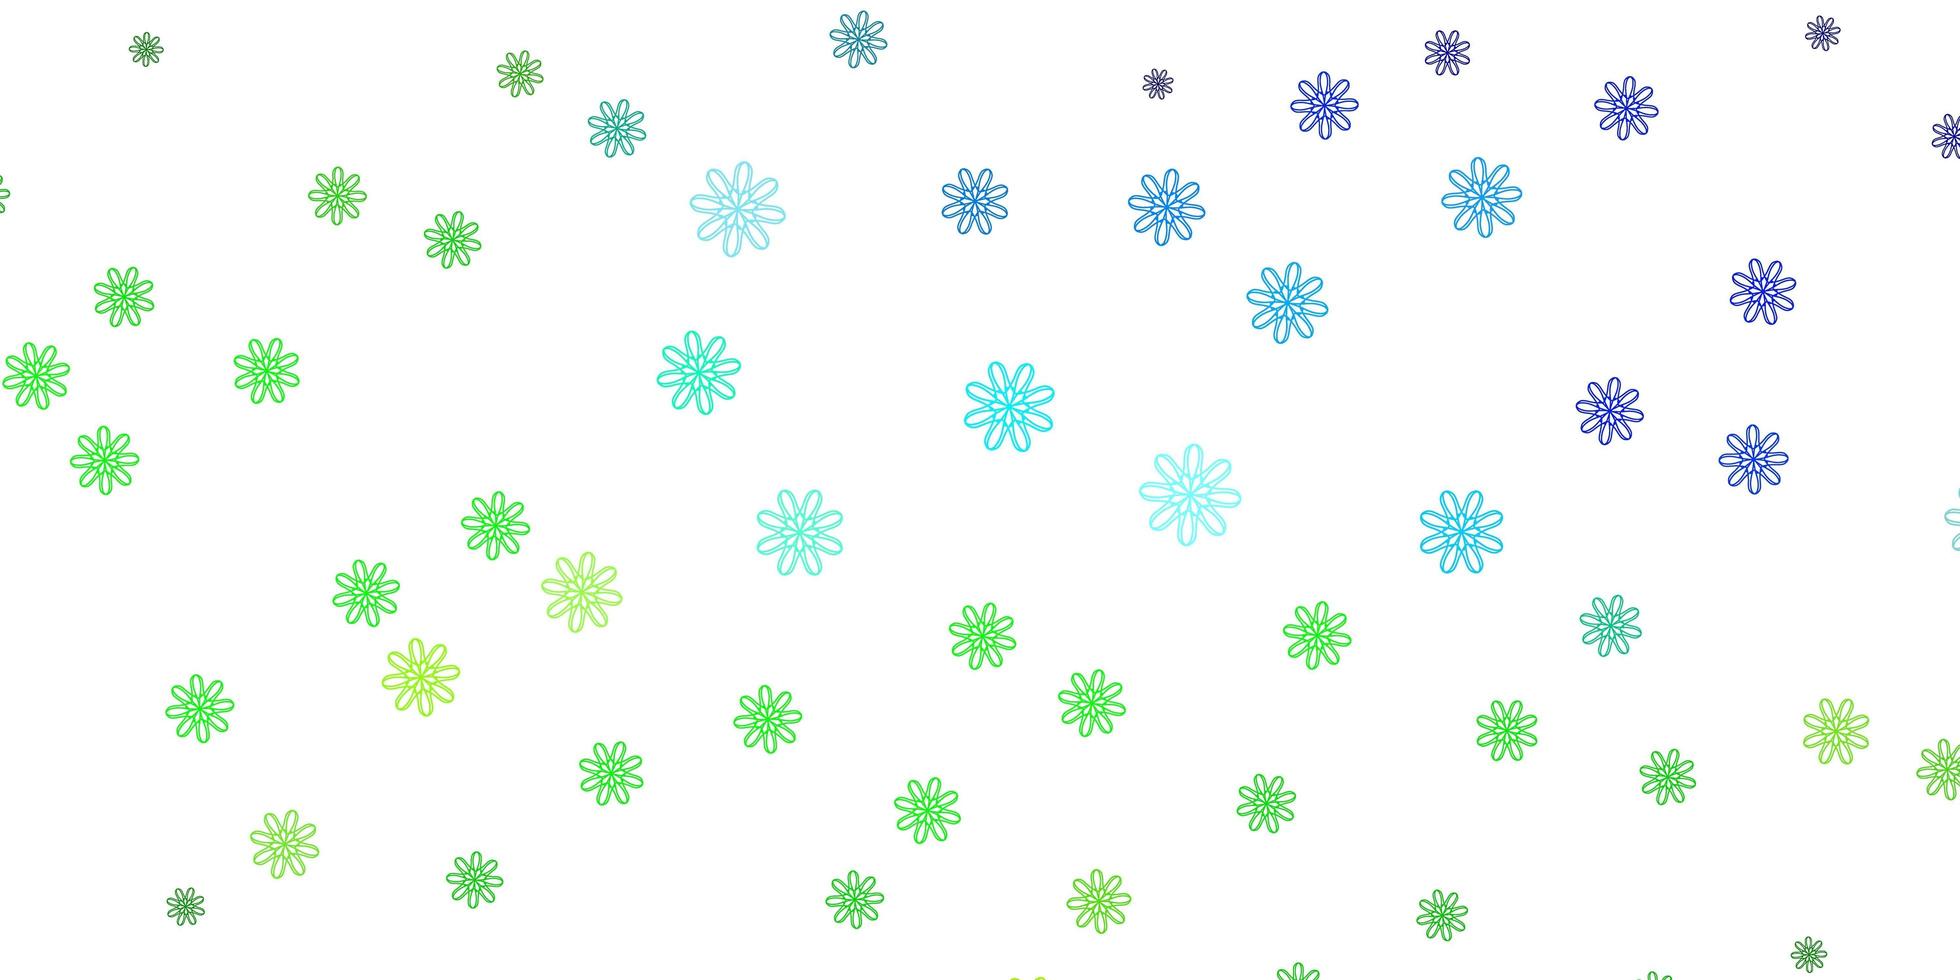 ljusblå, grön vektor doodle textur med blommor.